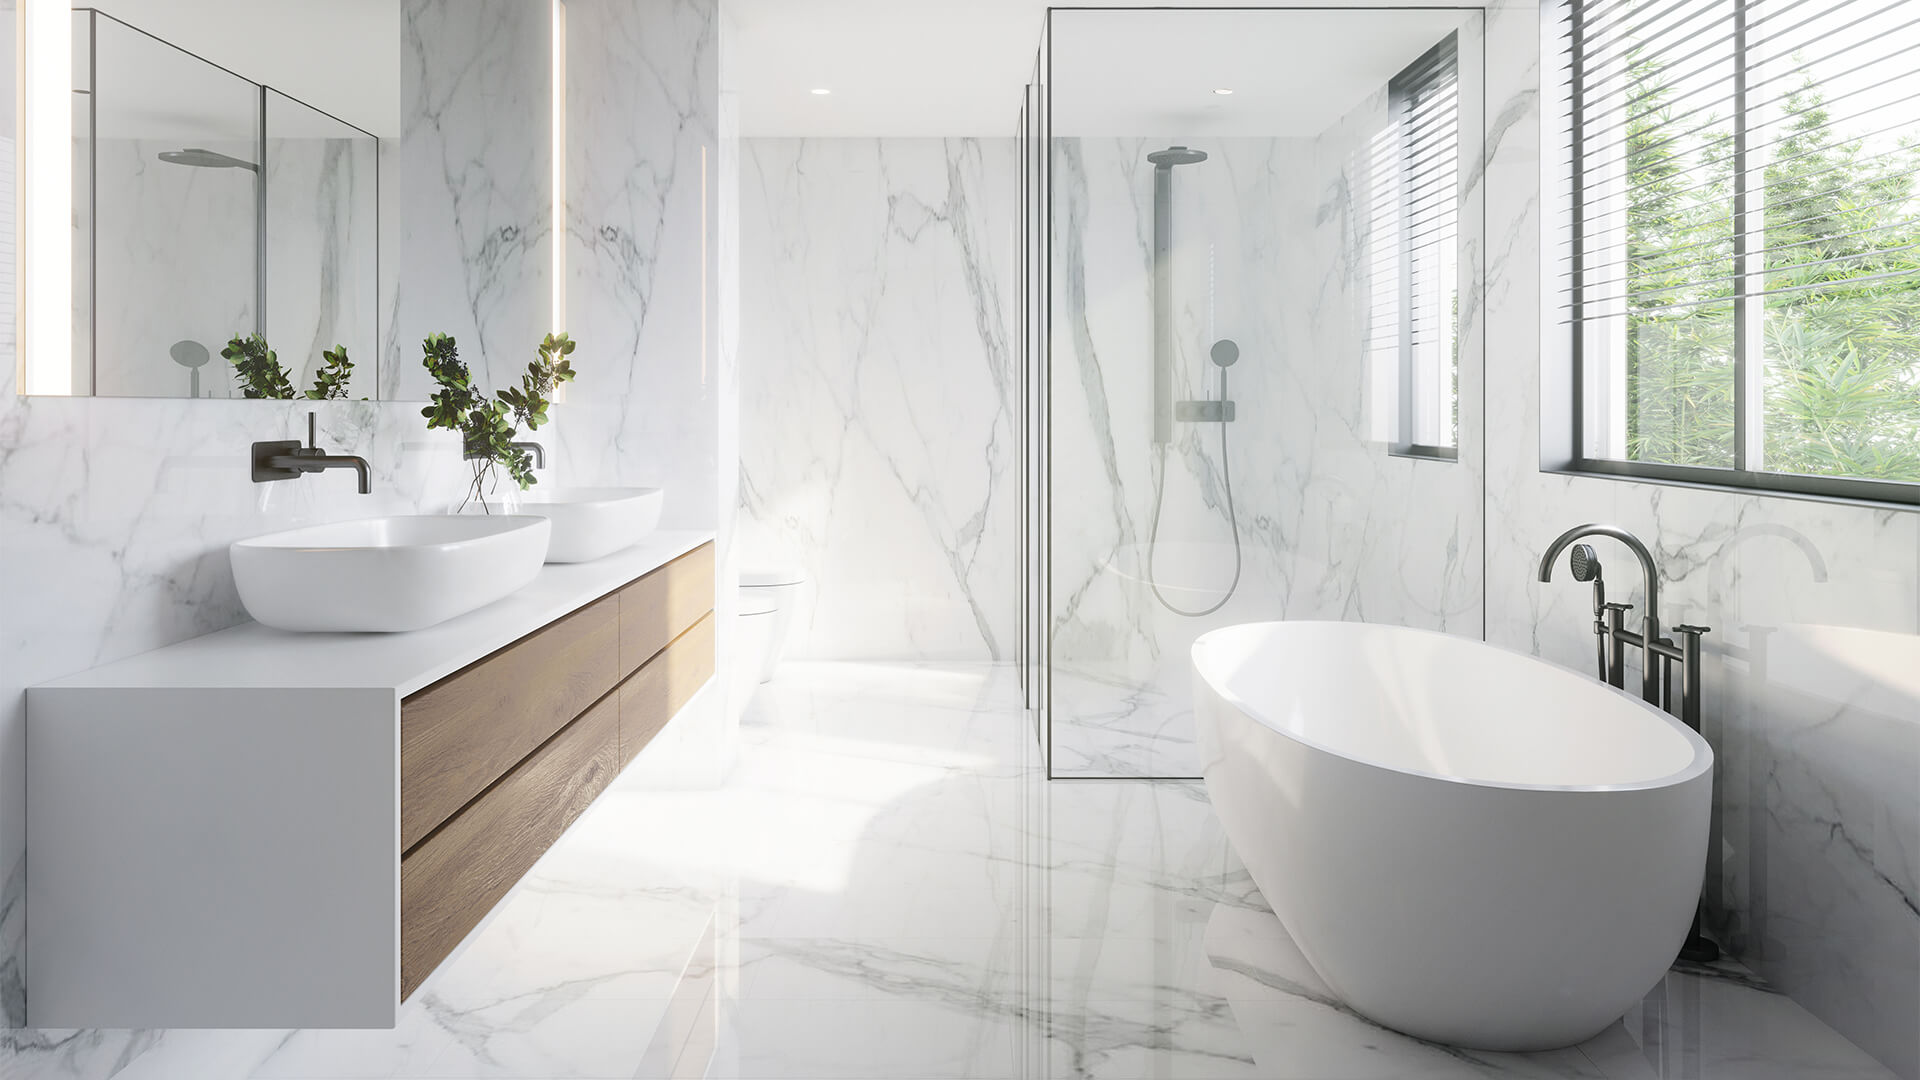 Modern Bathroom Trends For 2021 Build, Modern Bathroom Tile Ideas 2021